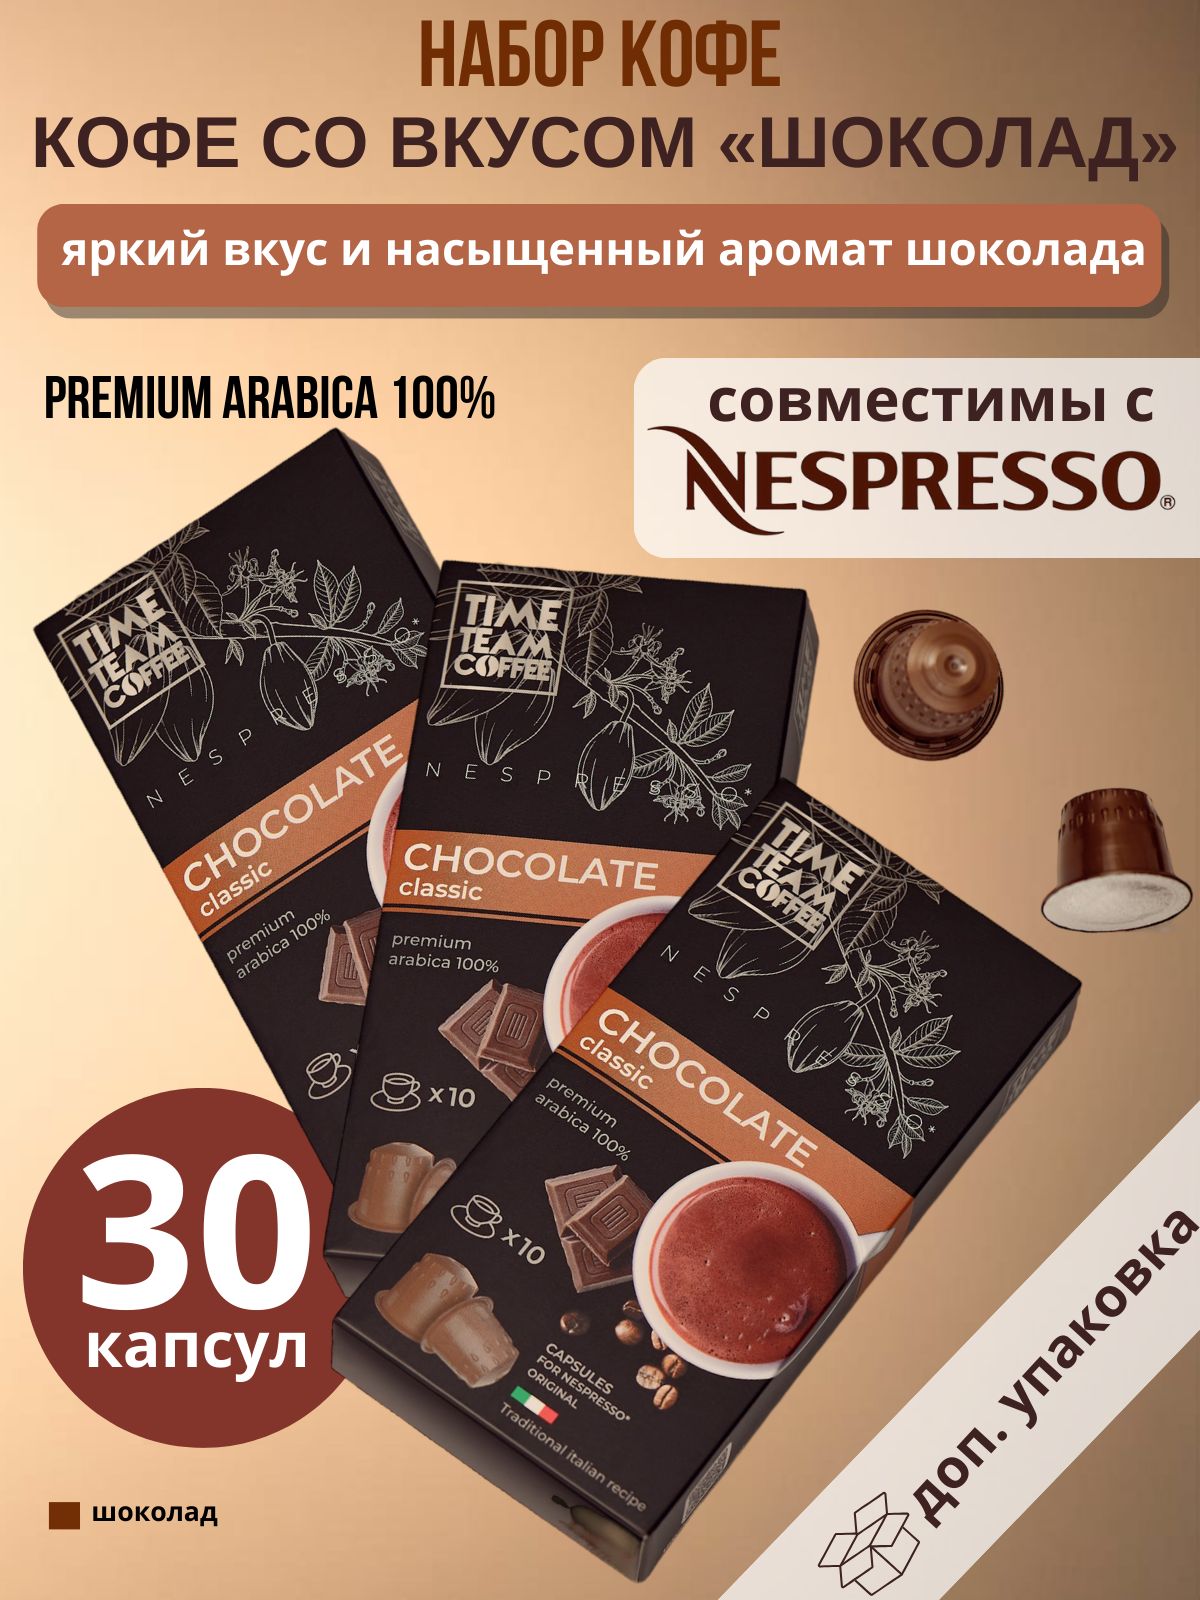 Набор кофе в капсулах Time Team Coffee Chocolate Шоколад Nespresso арабика, 30 капсул